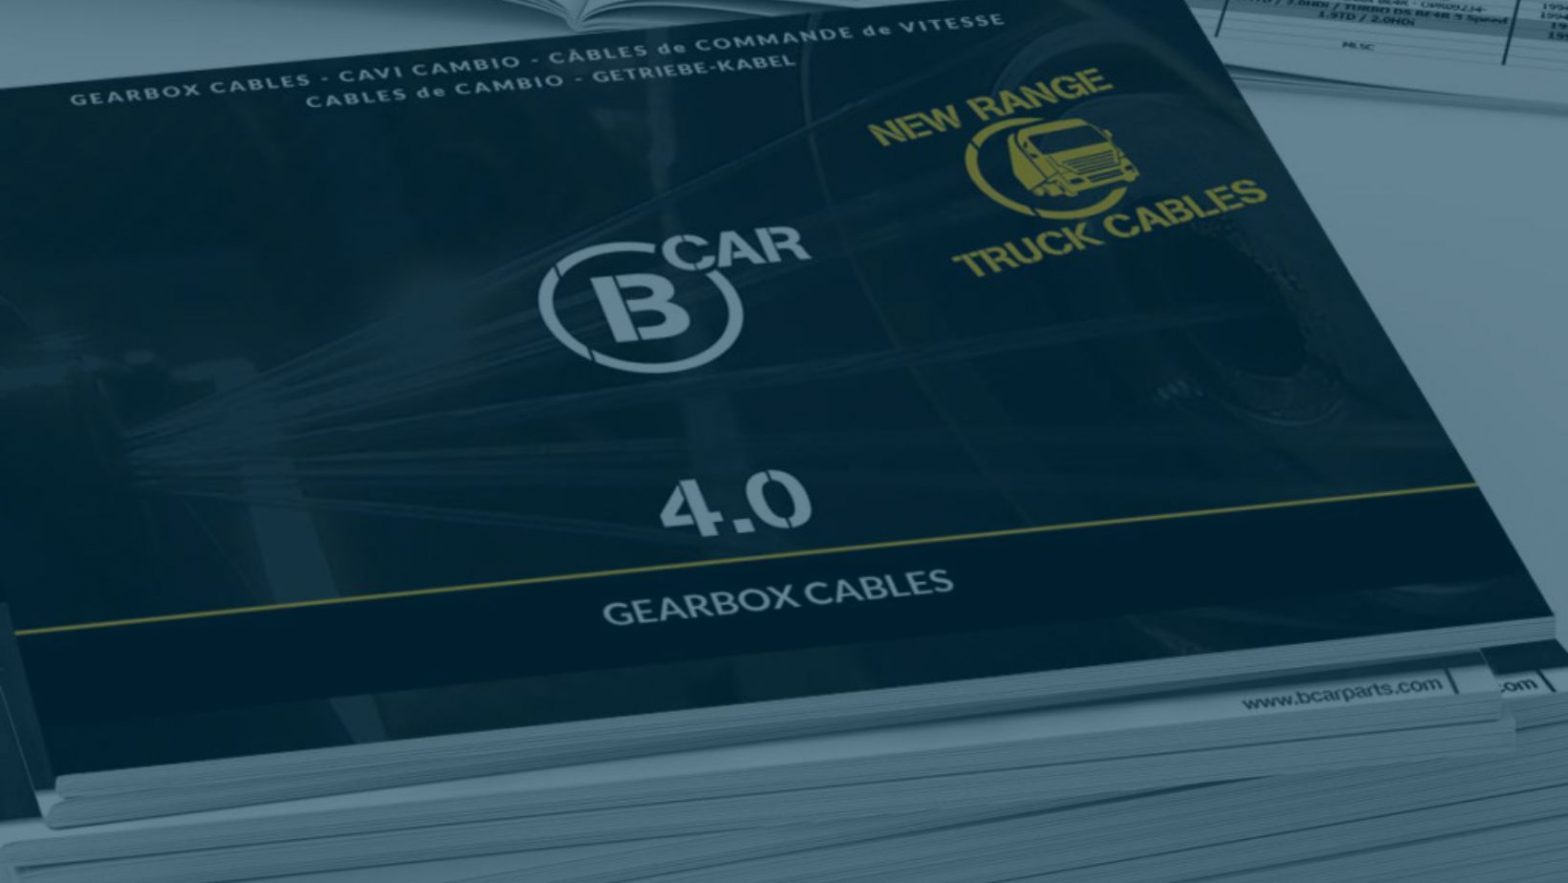 GBC-V4.0-BCAR-CATALOGUE